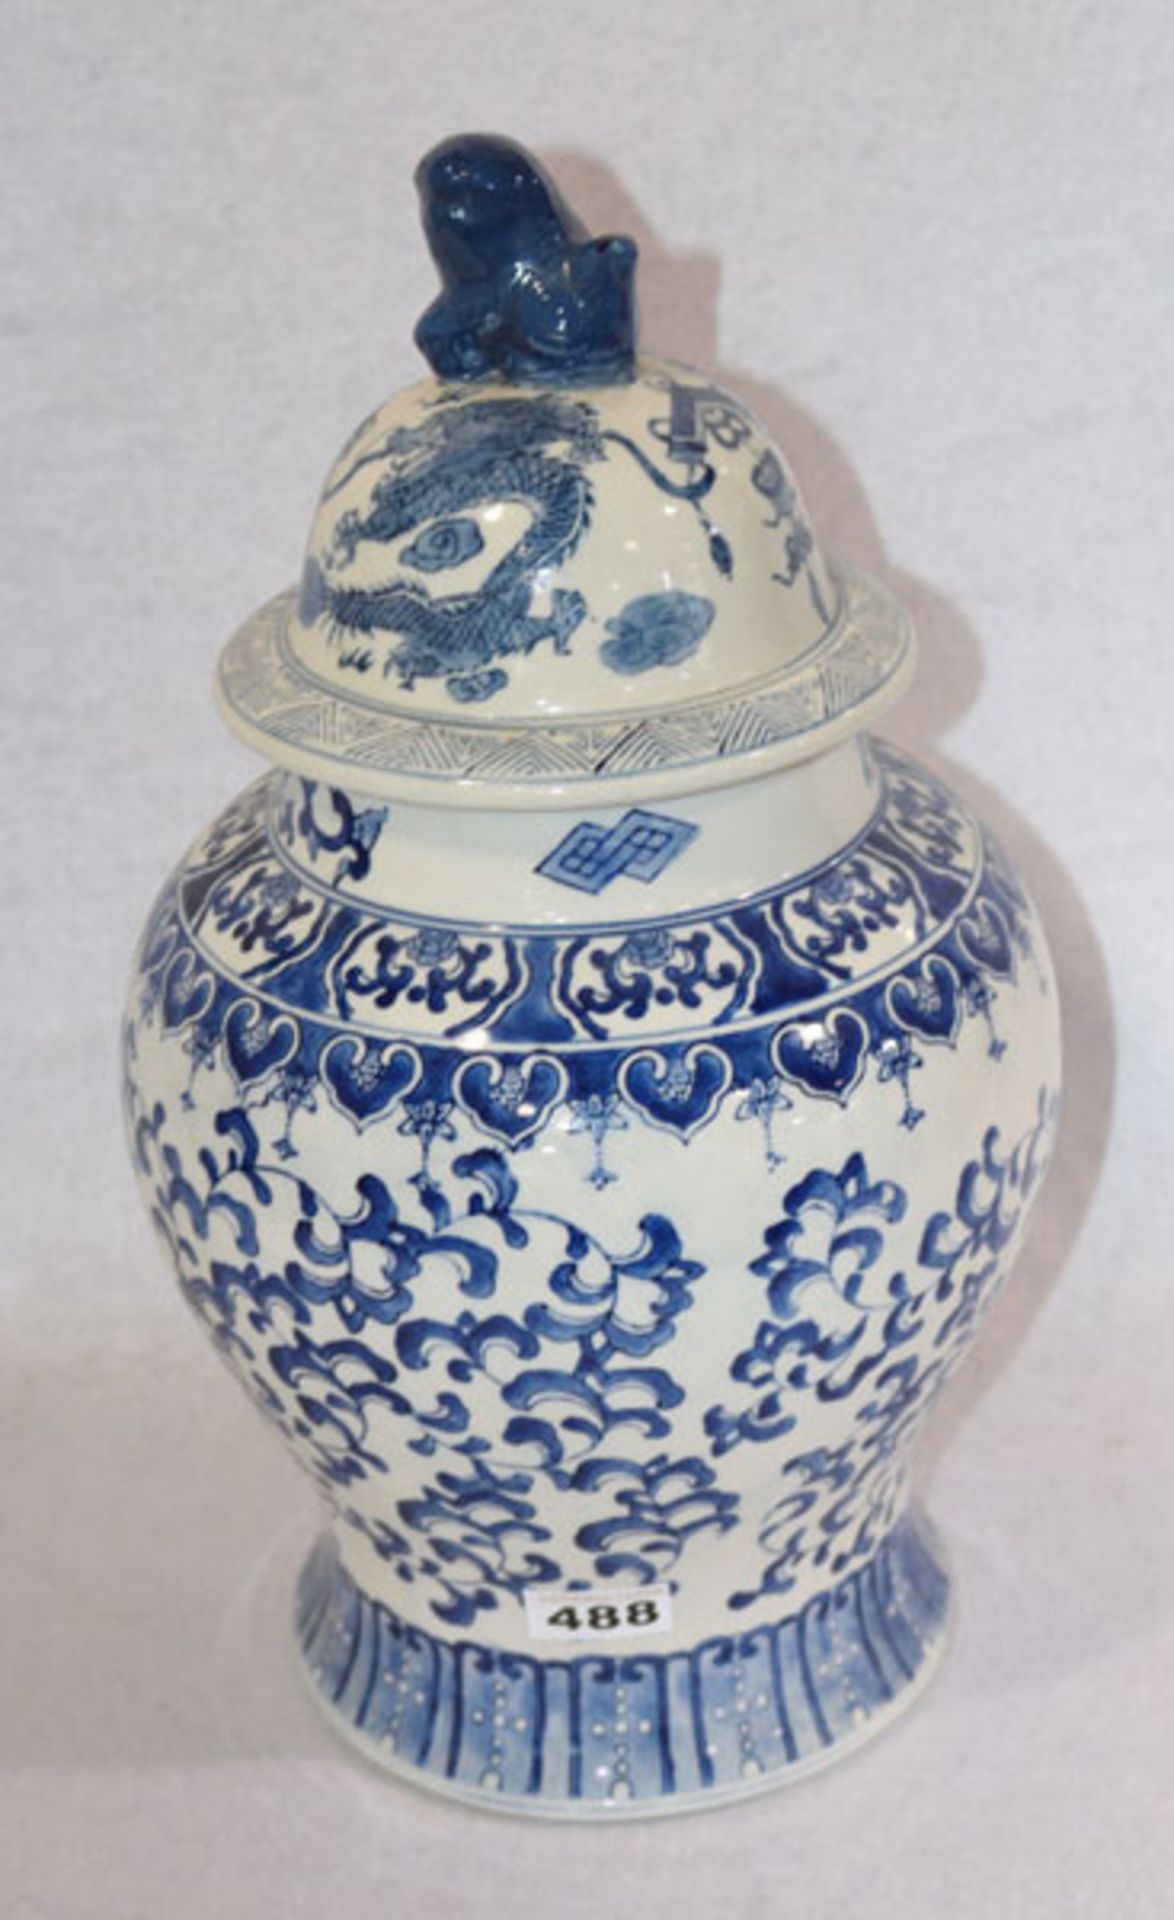 Asiatische Deckelvase mit blauem Dekor, plastischer Deckelknauff, H 43 cm, D ca. 25 cm,